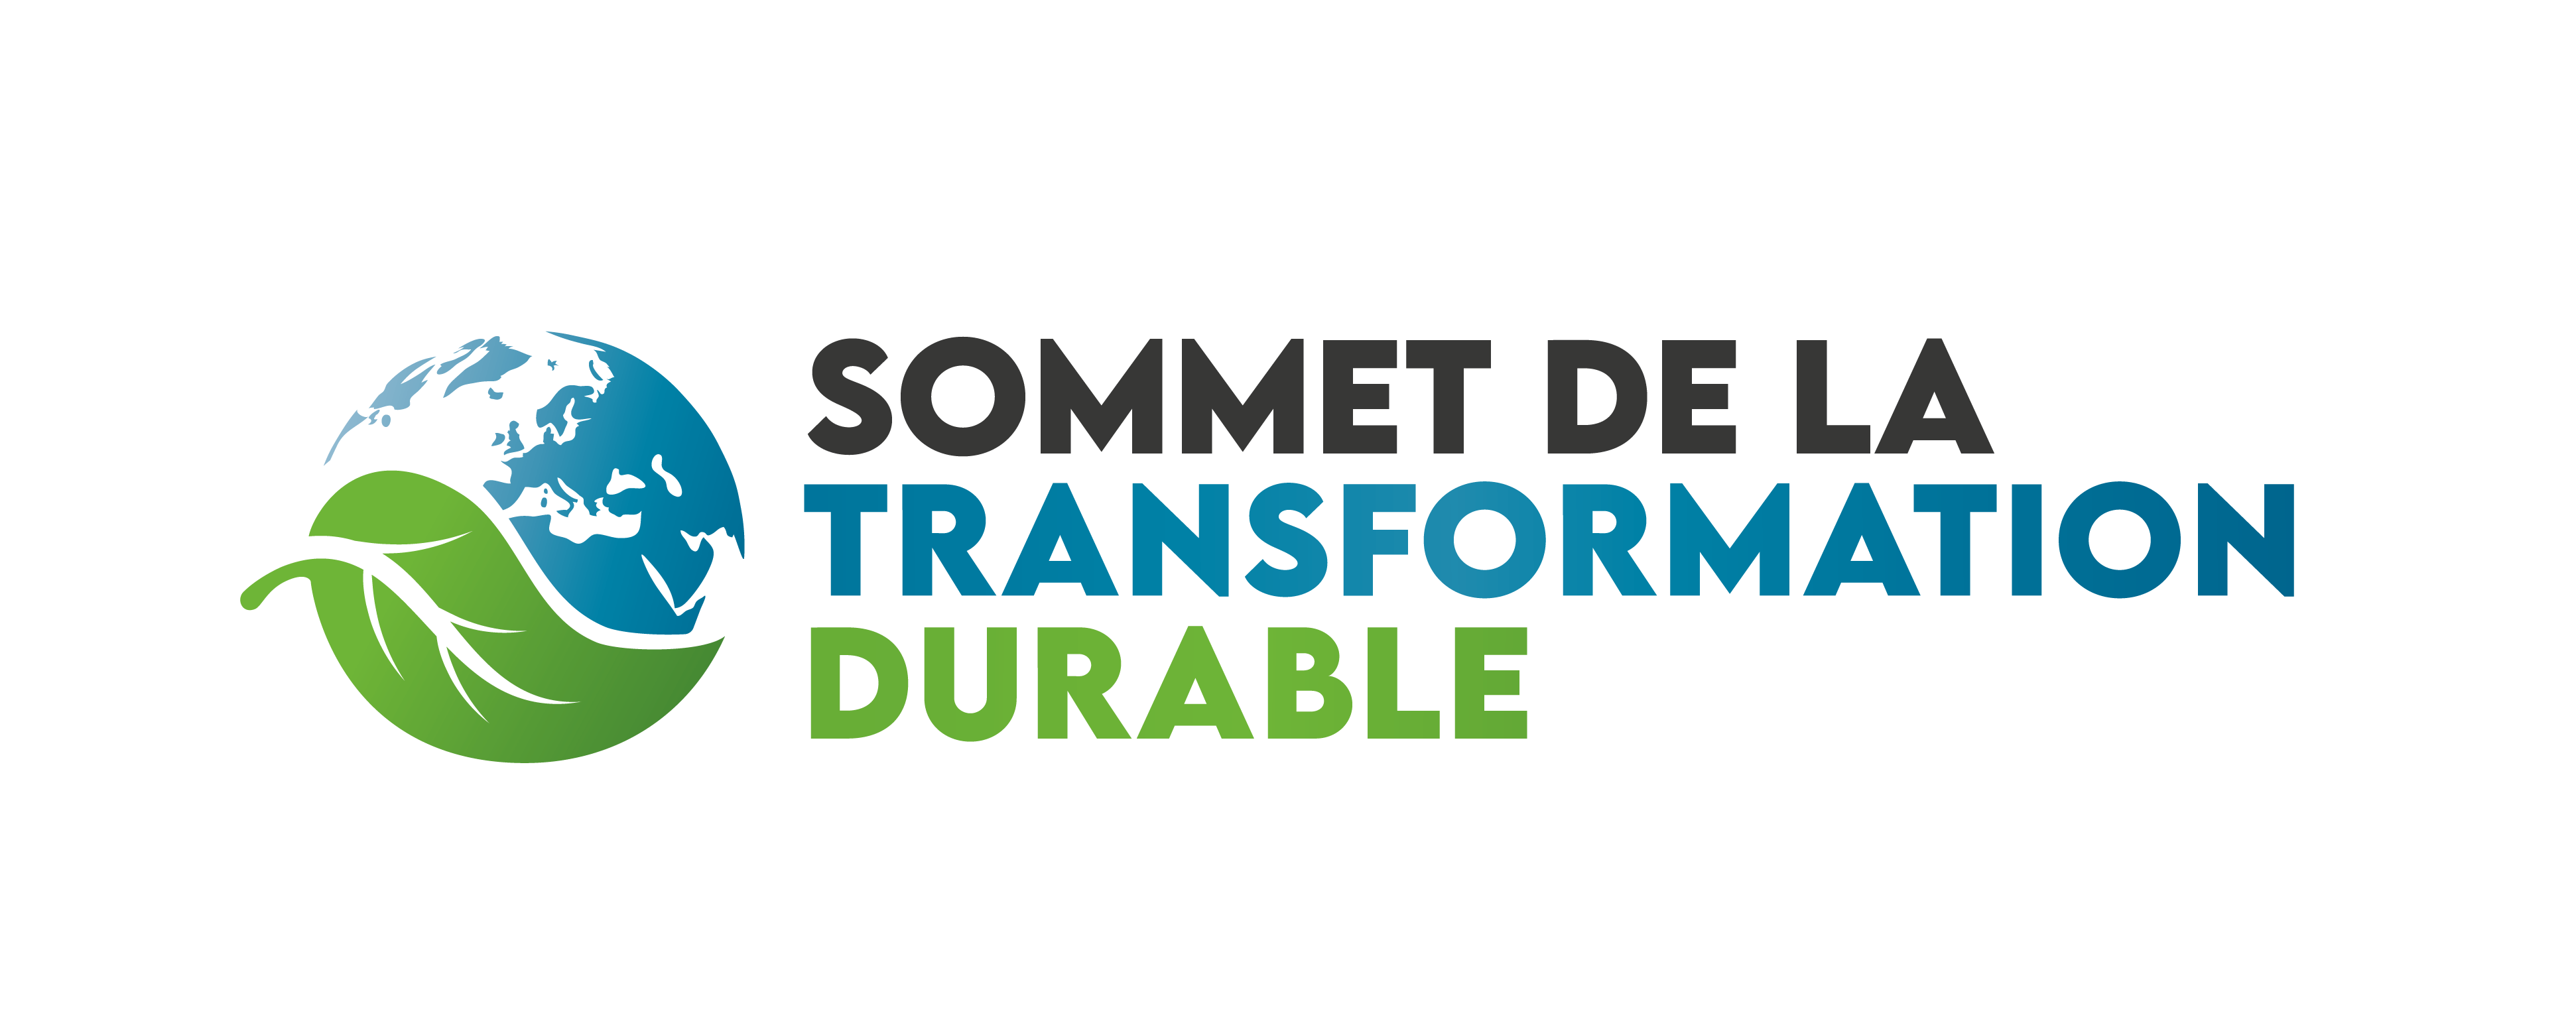 Le Sommet de la Transformation Durable - Décideurs IMMO - Leaders League - Groupe Ficade